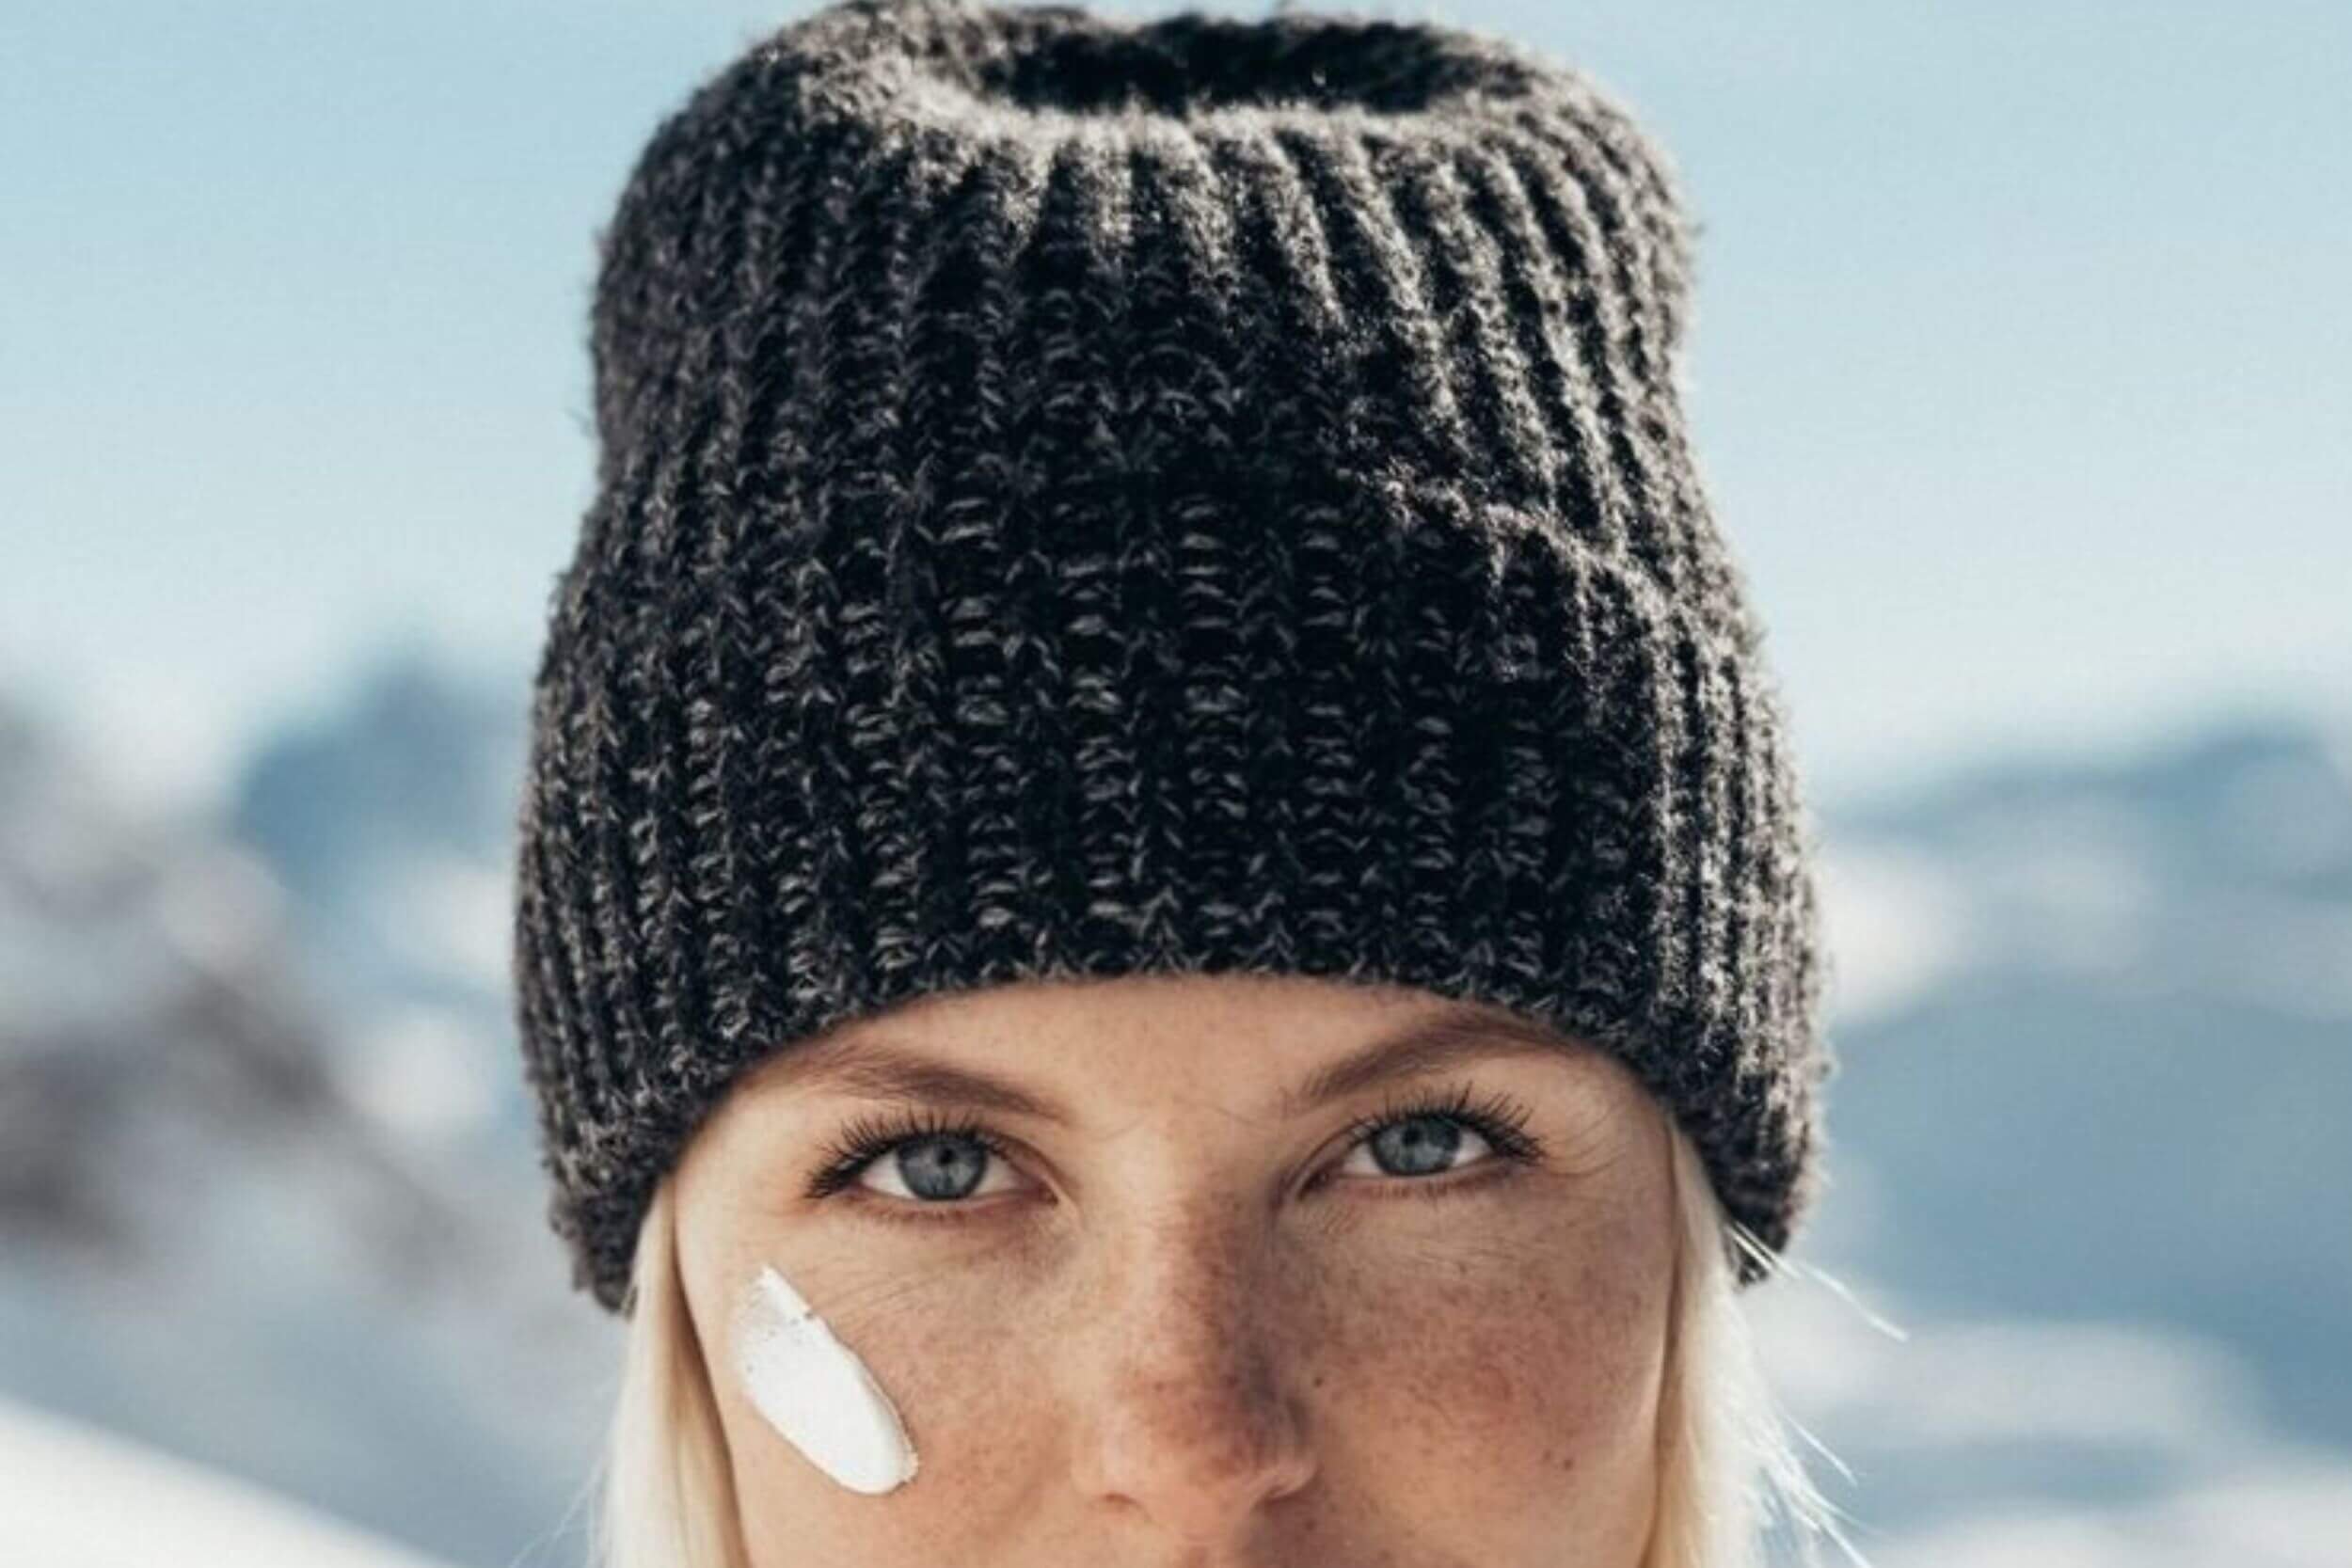 Tendance : comment porter le bonnet cet hiver ?